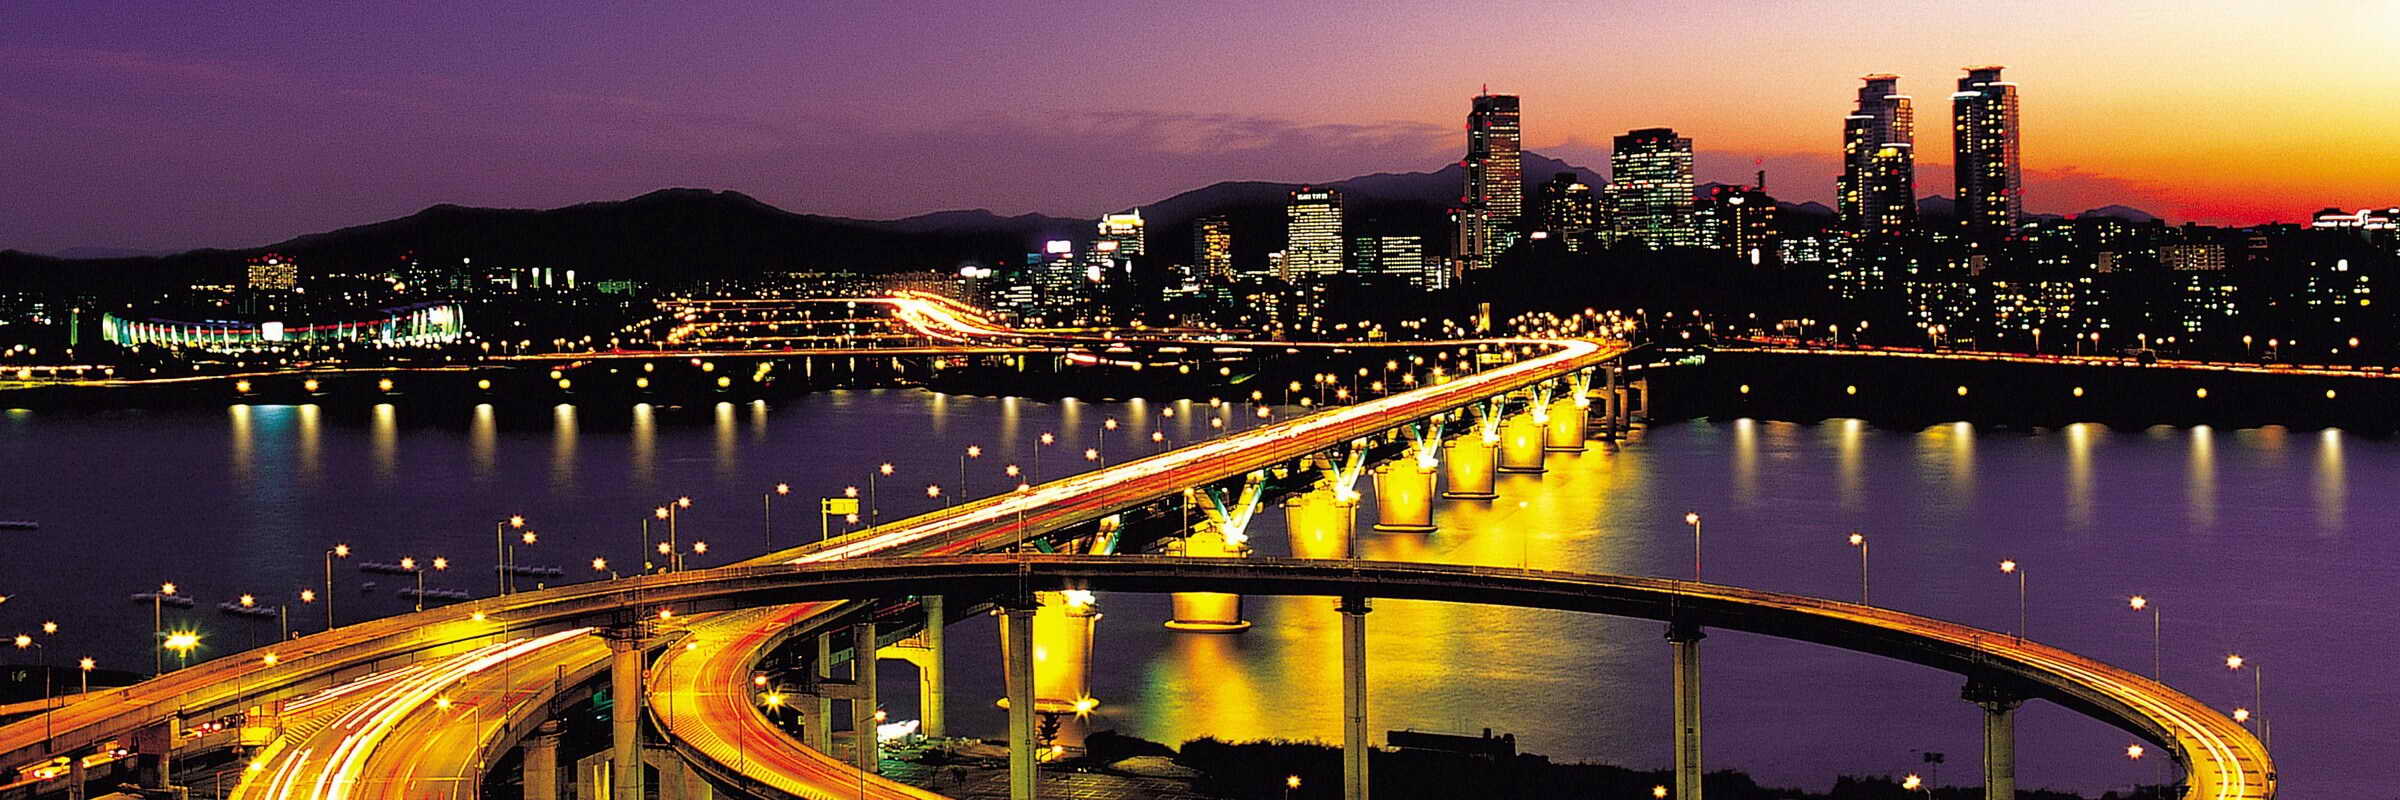 Bei Anbruch der Nacht wird die glitzernde Millionenmetropole Seoul zu einem Meer aus Licht und Farbe.